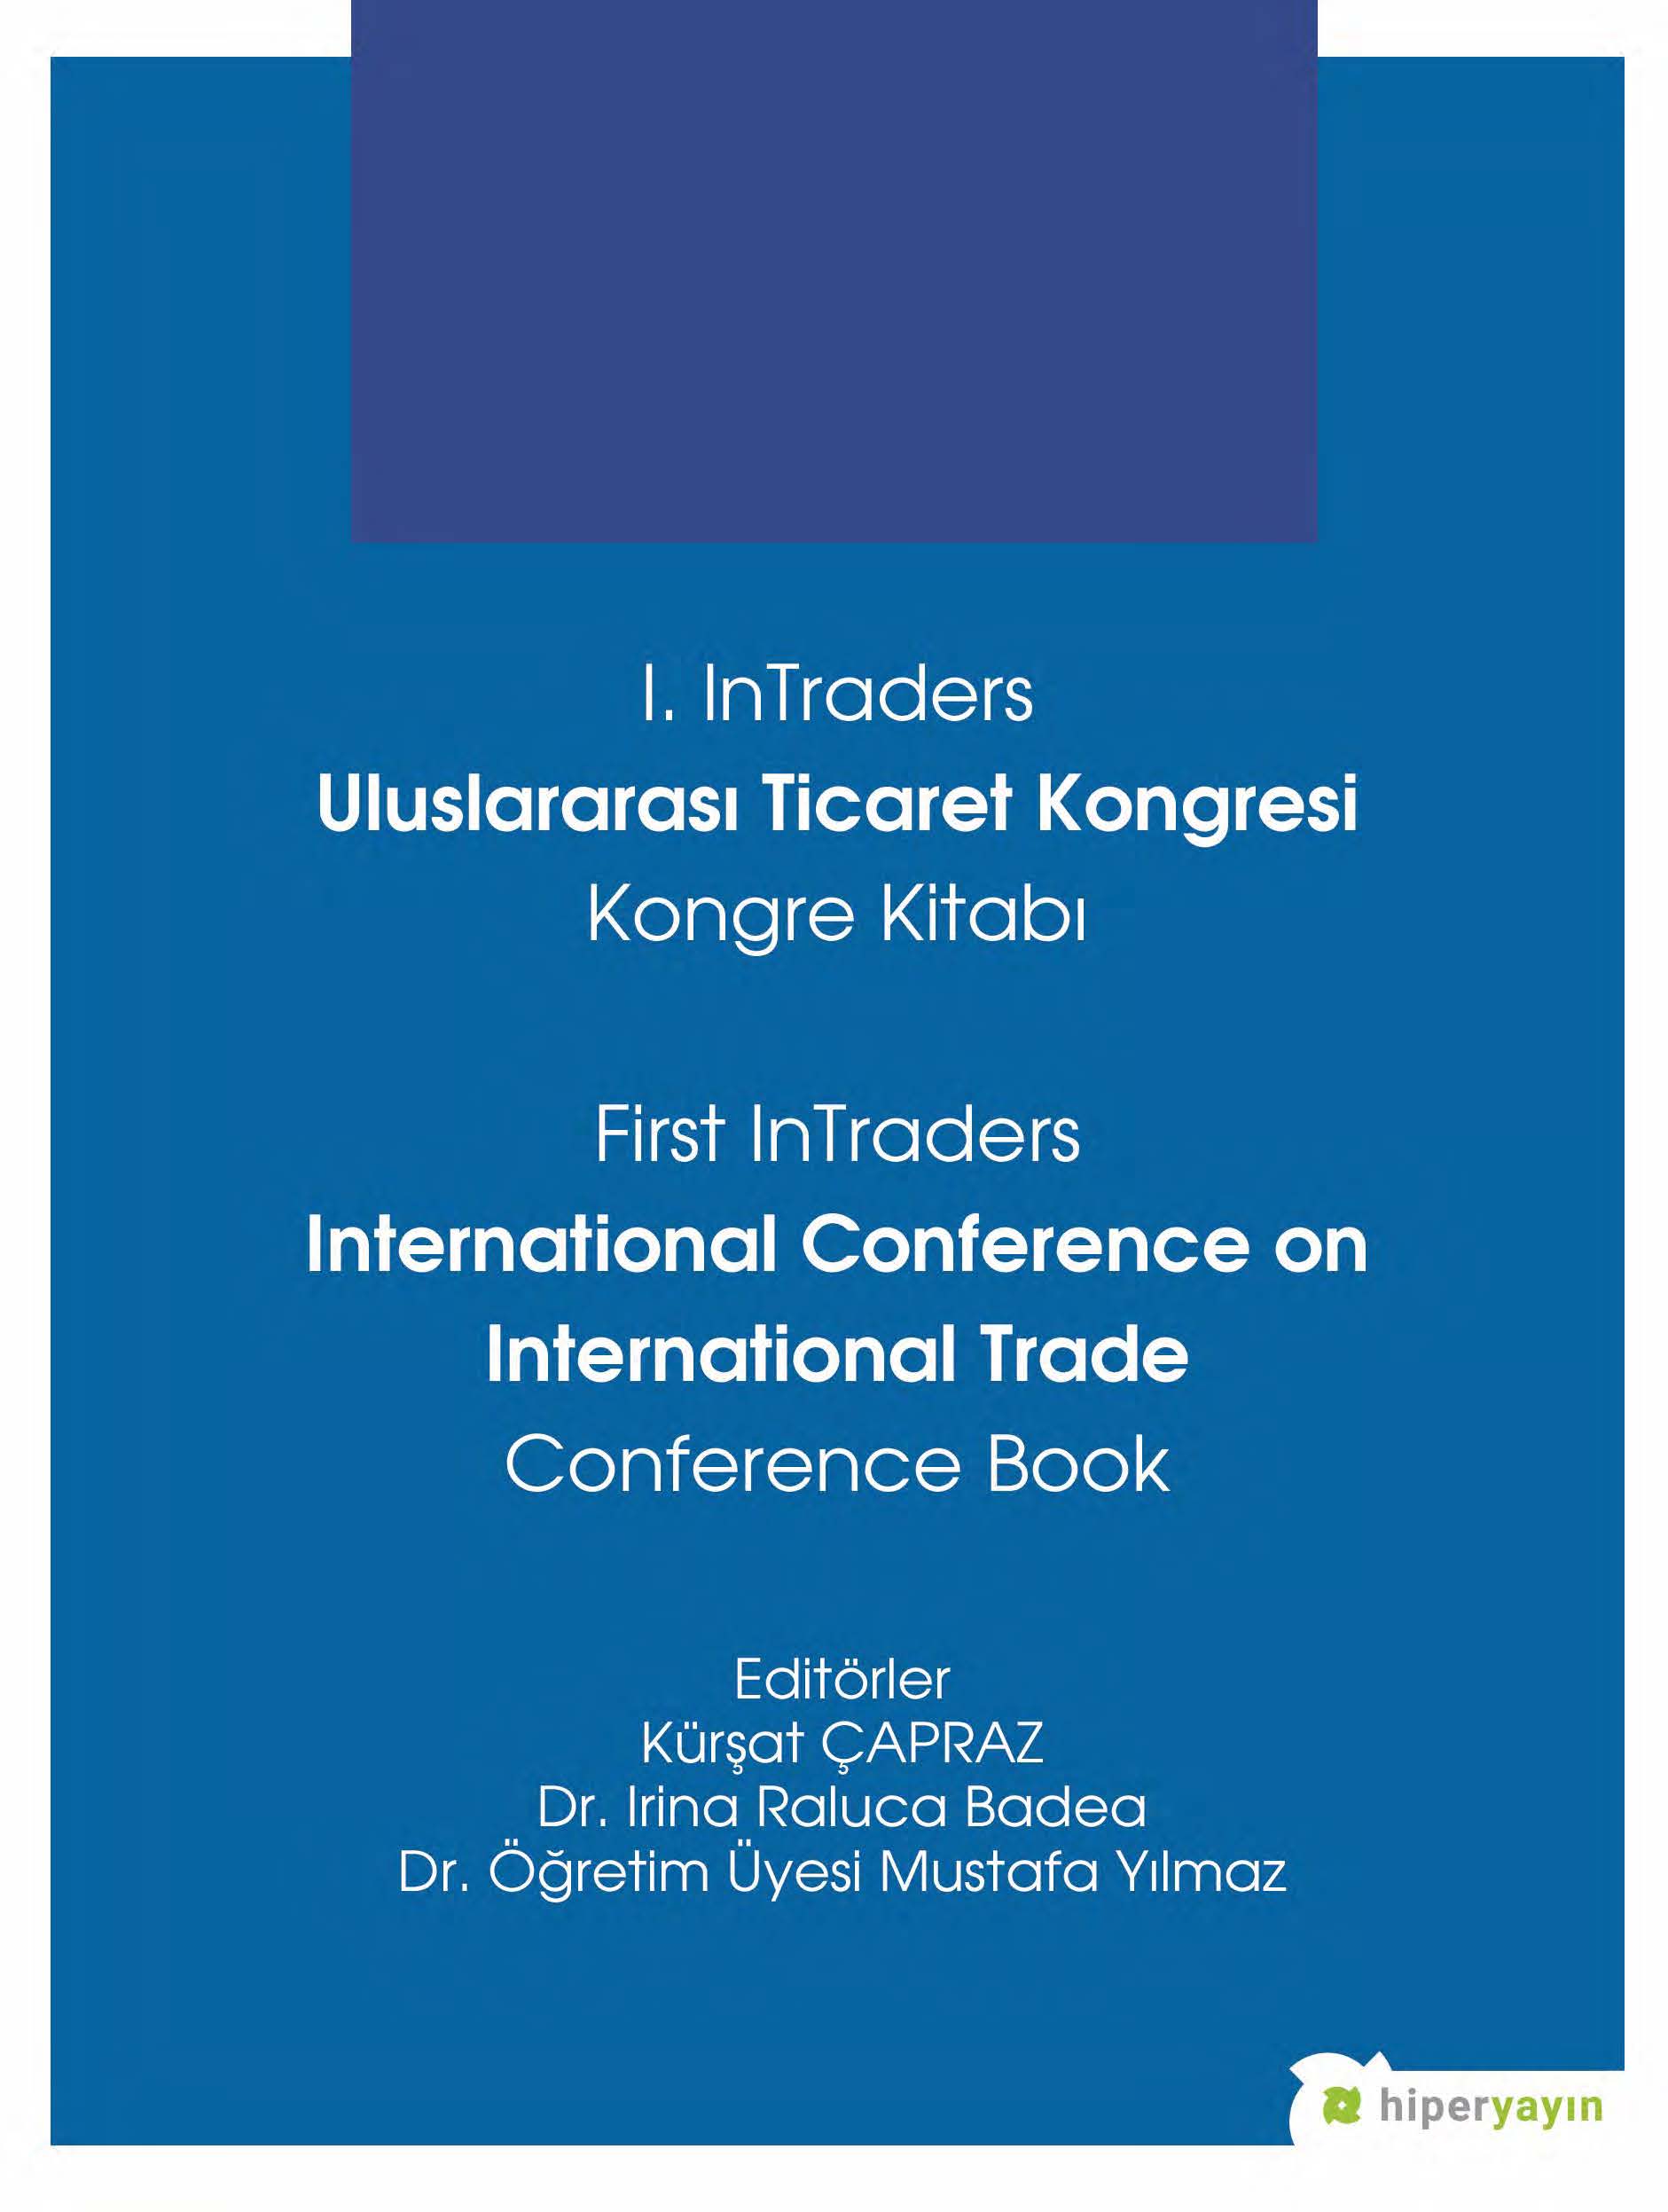 I. InTraders Uluslararası Ticaret Kongresi Kongre Kitabı